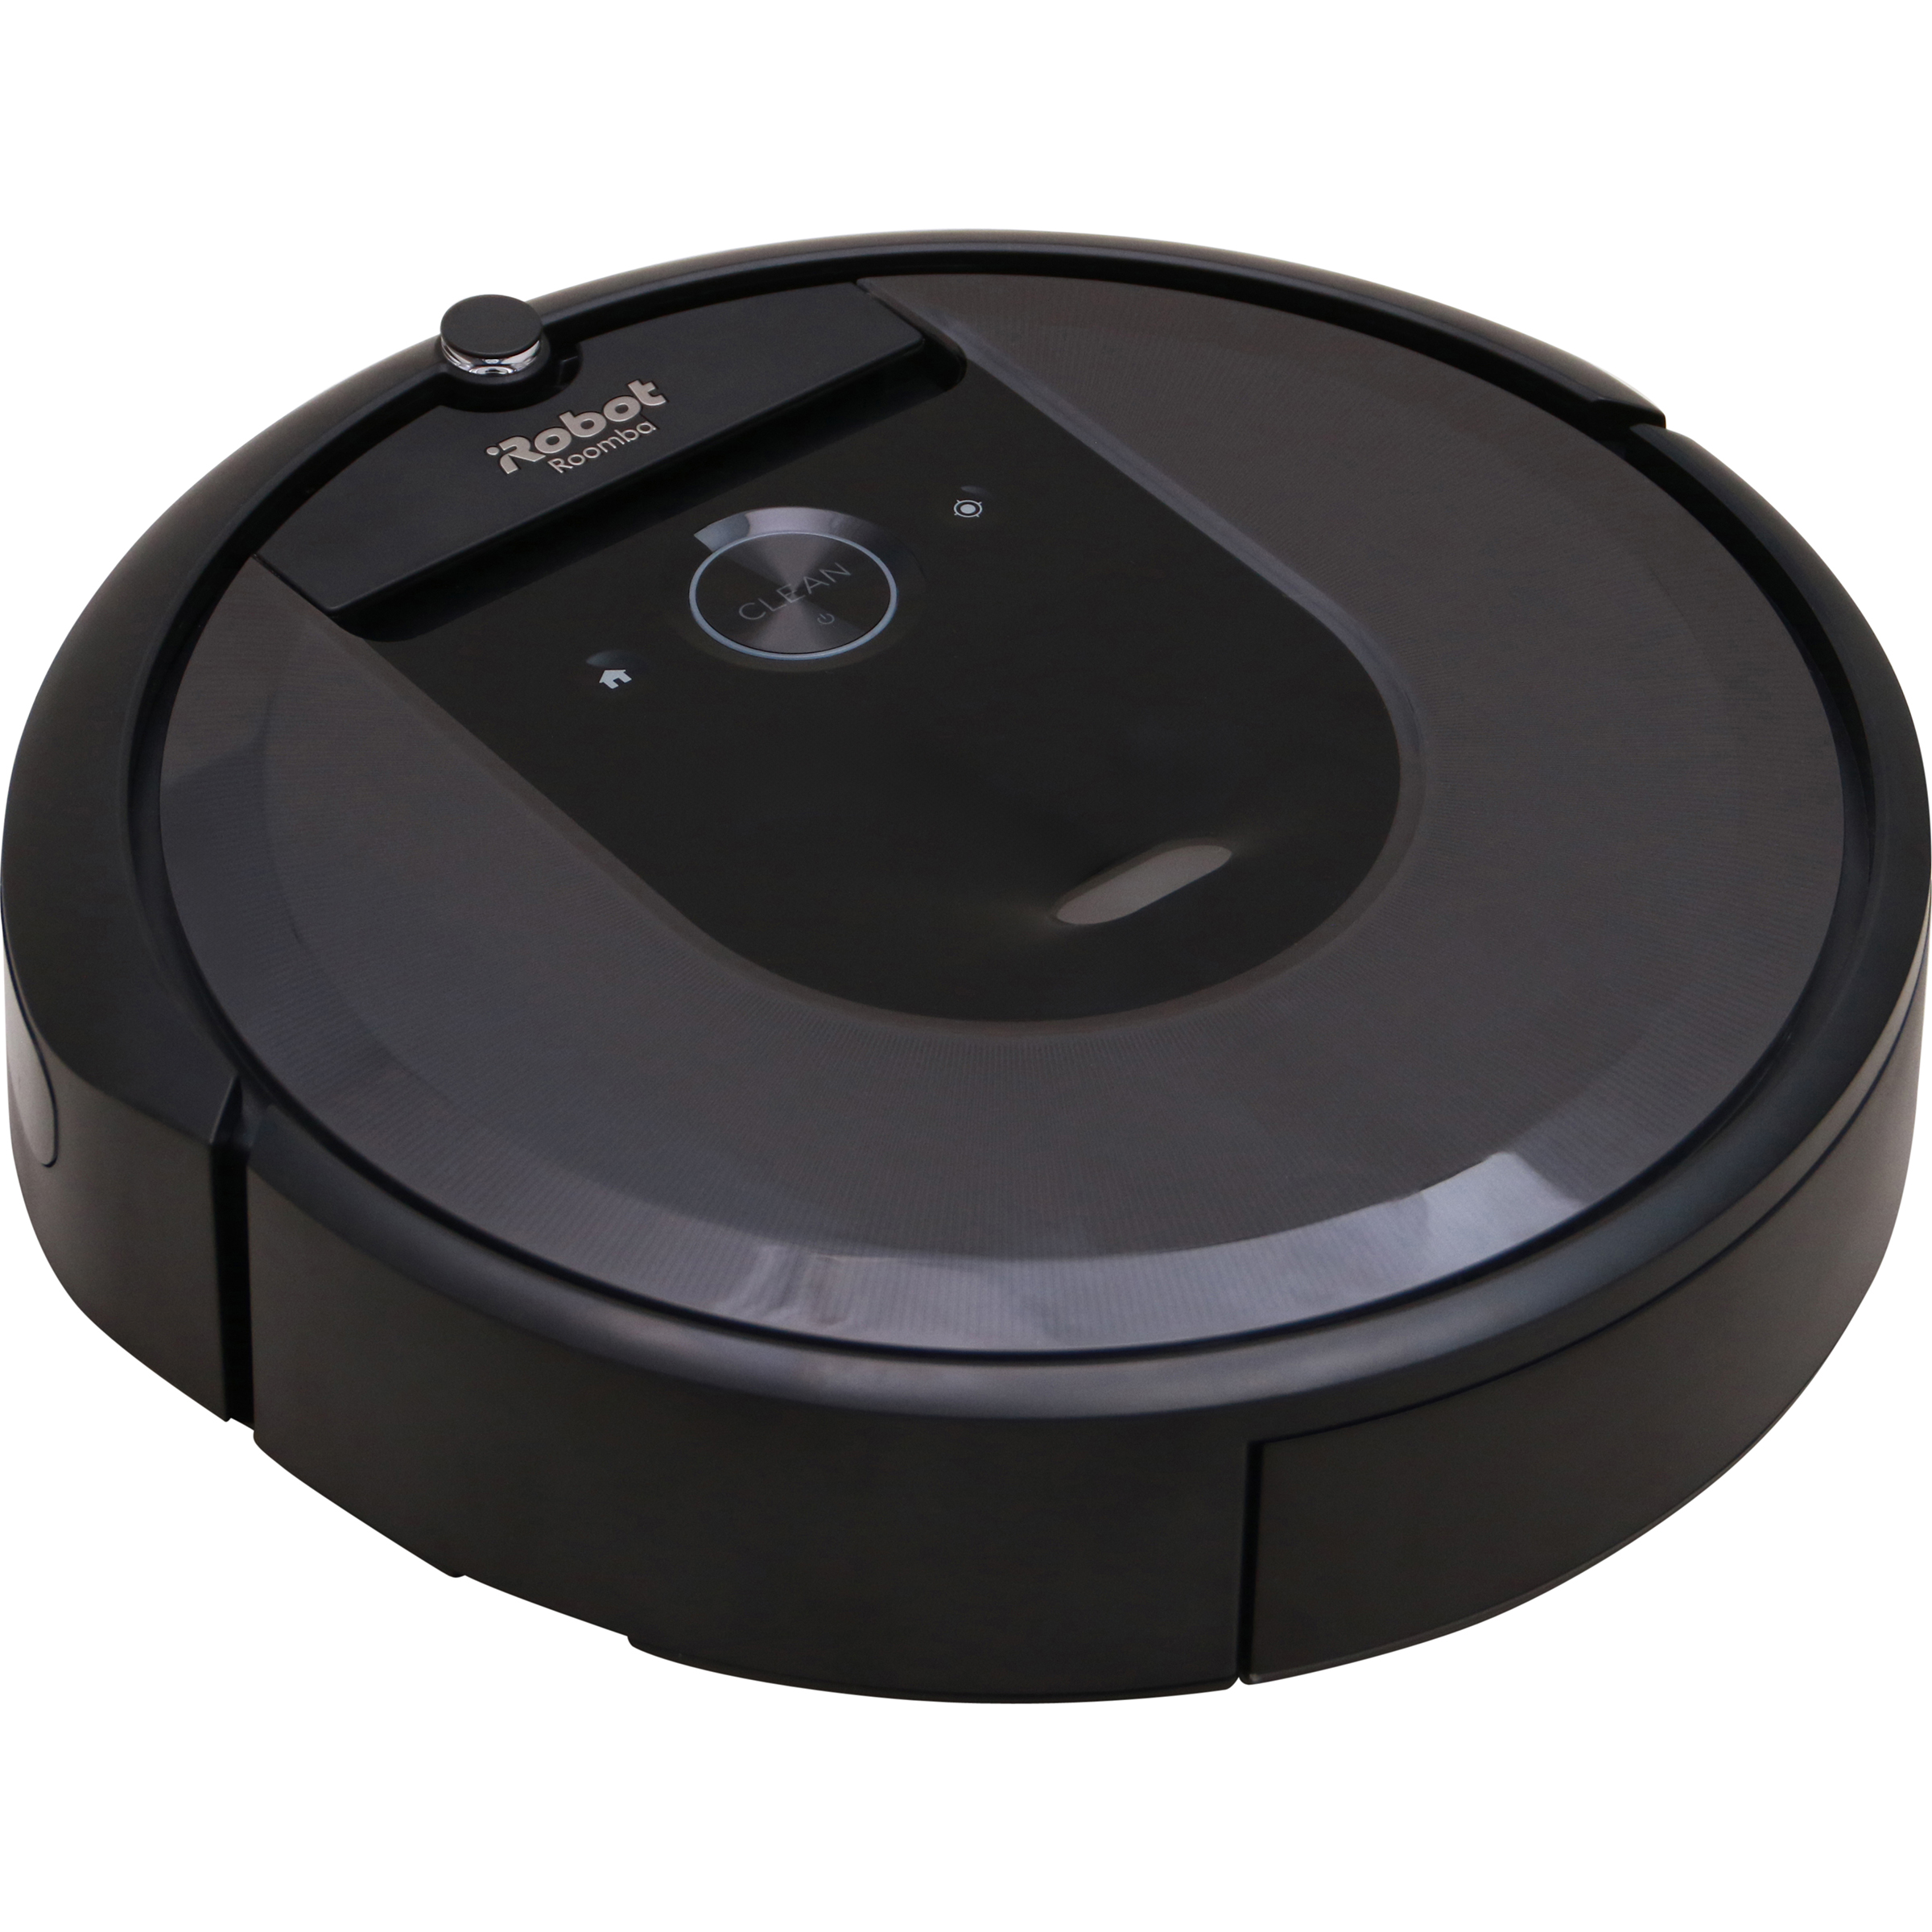 Accessoires pour Robot Aspirateur Roomba. Brosse, Batterie, Bac à Déchets